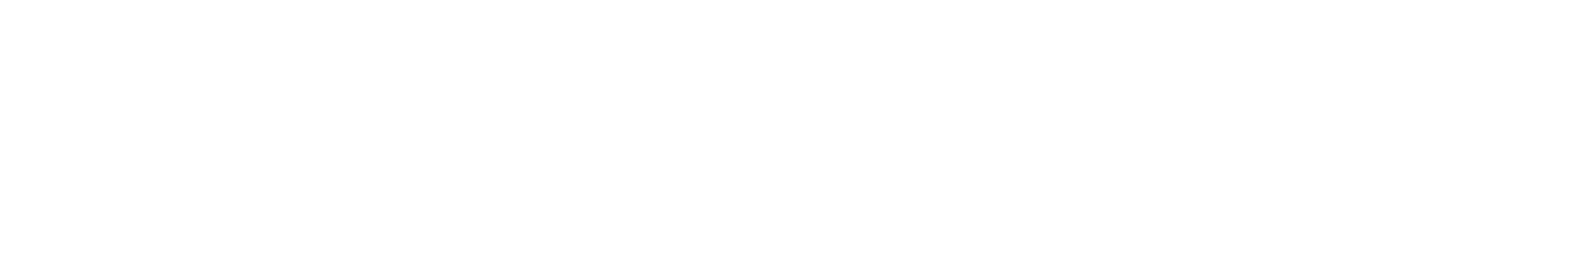 TransMedics Group logo large for dark backgrounds (transparent PNG)